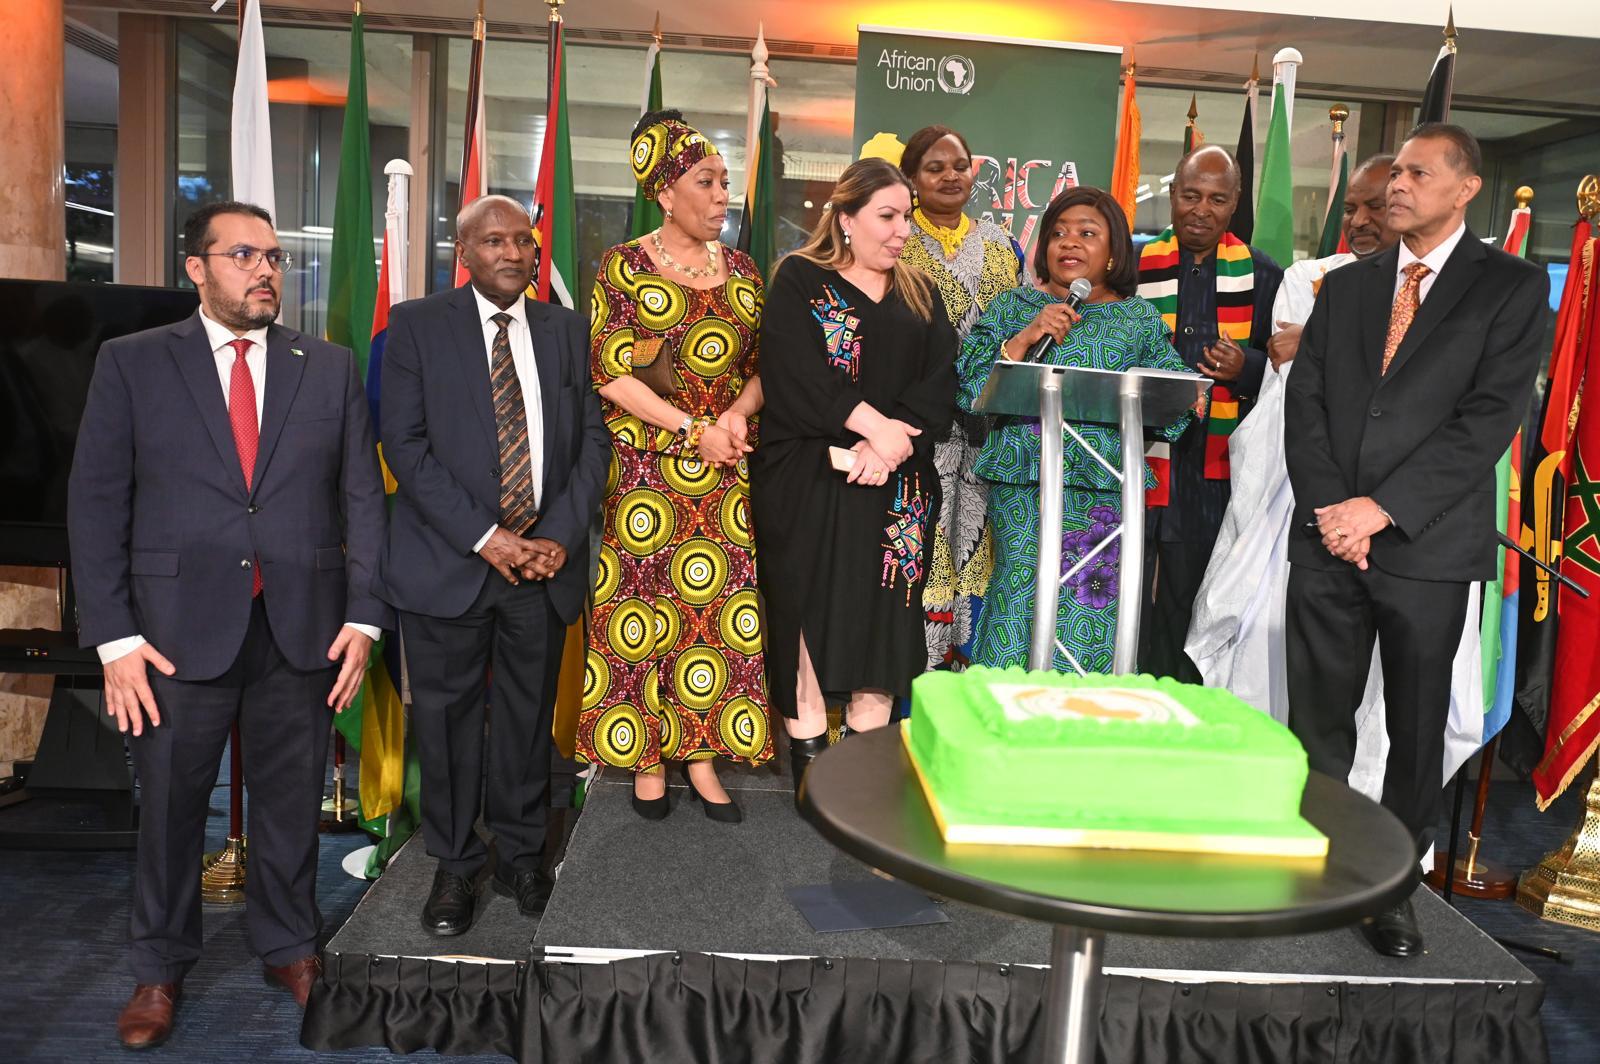 DIPLOMATIE: L'AFRICA DAY célébré avec succès à Londres